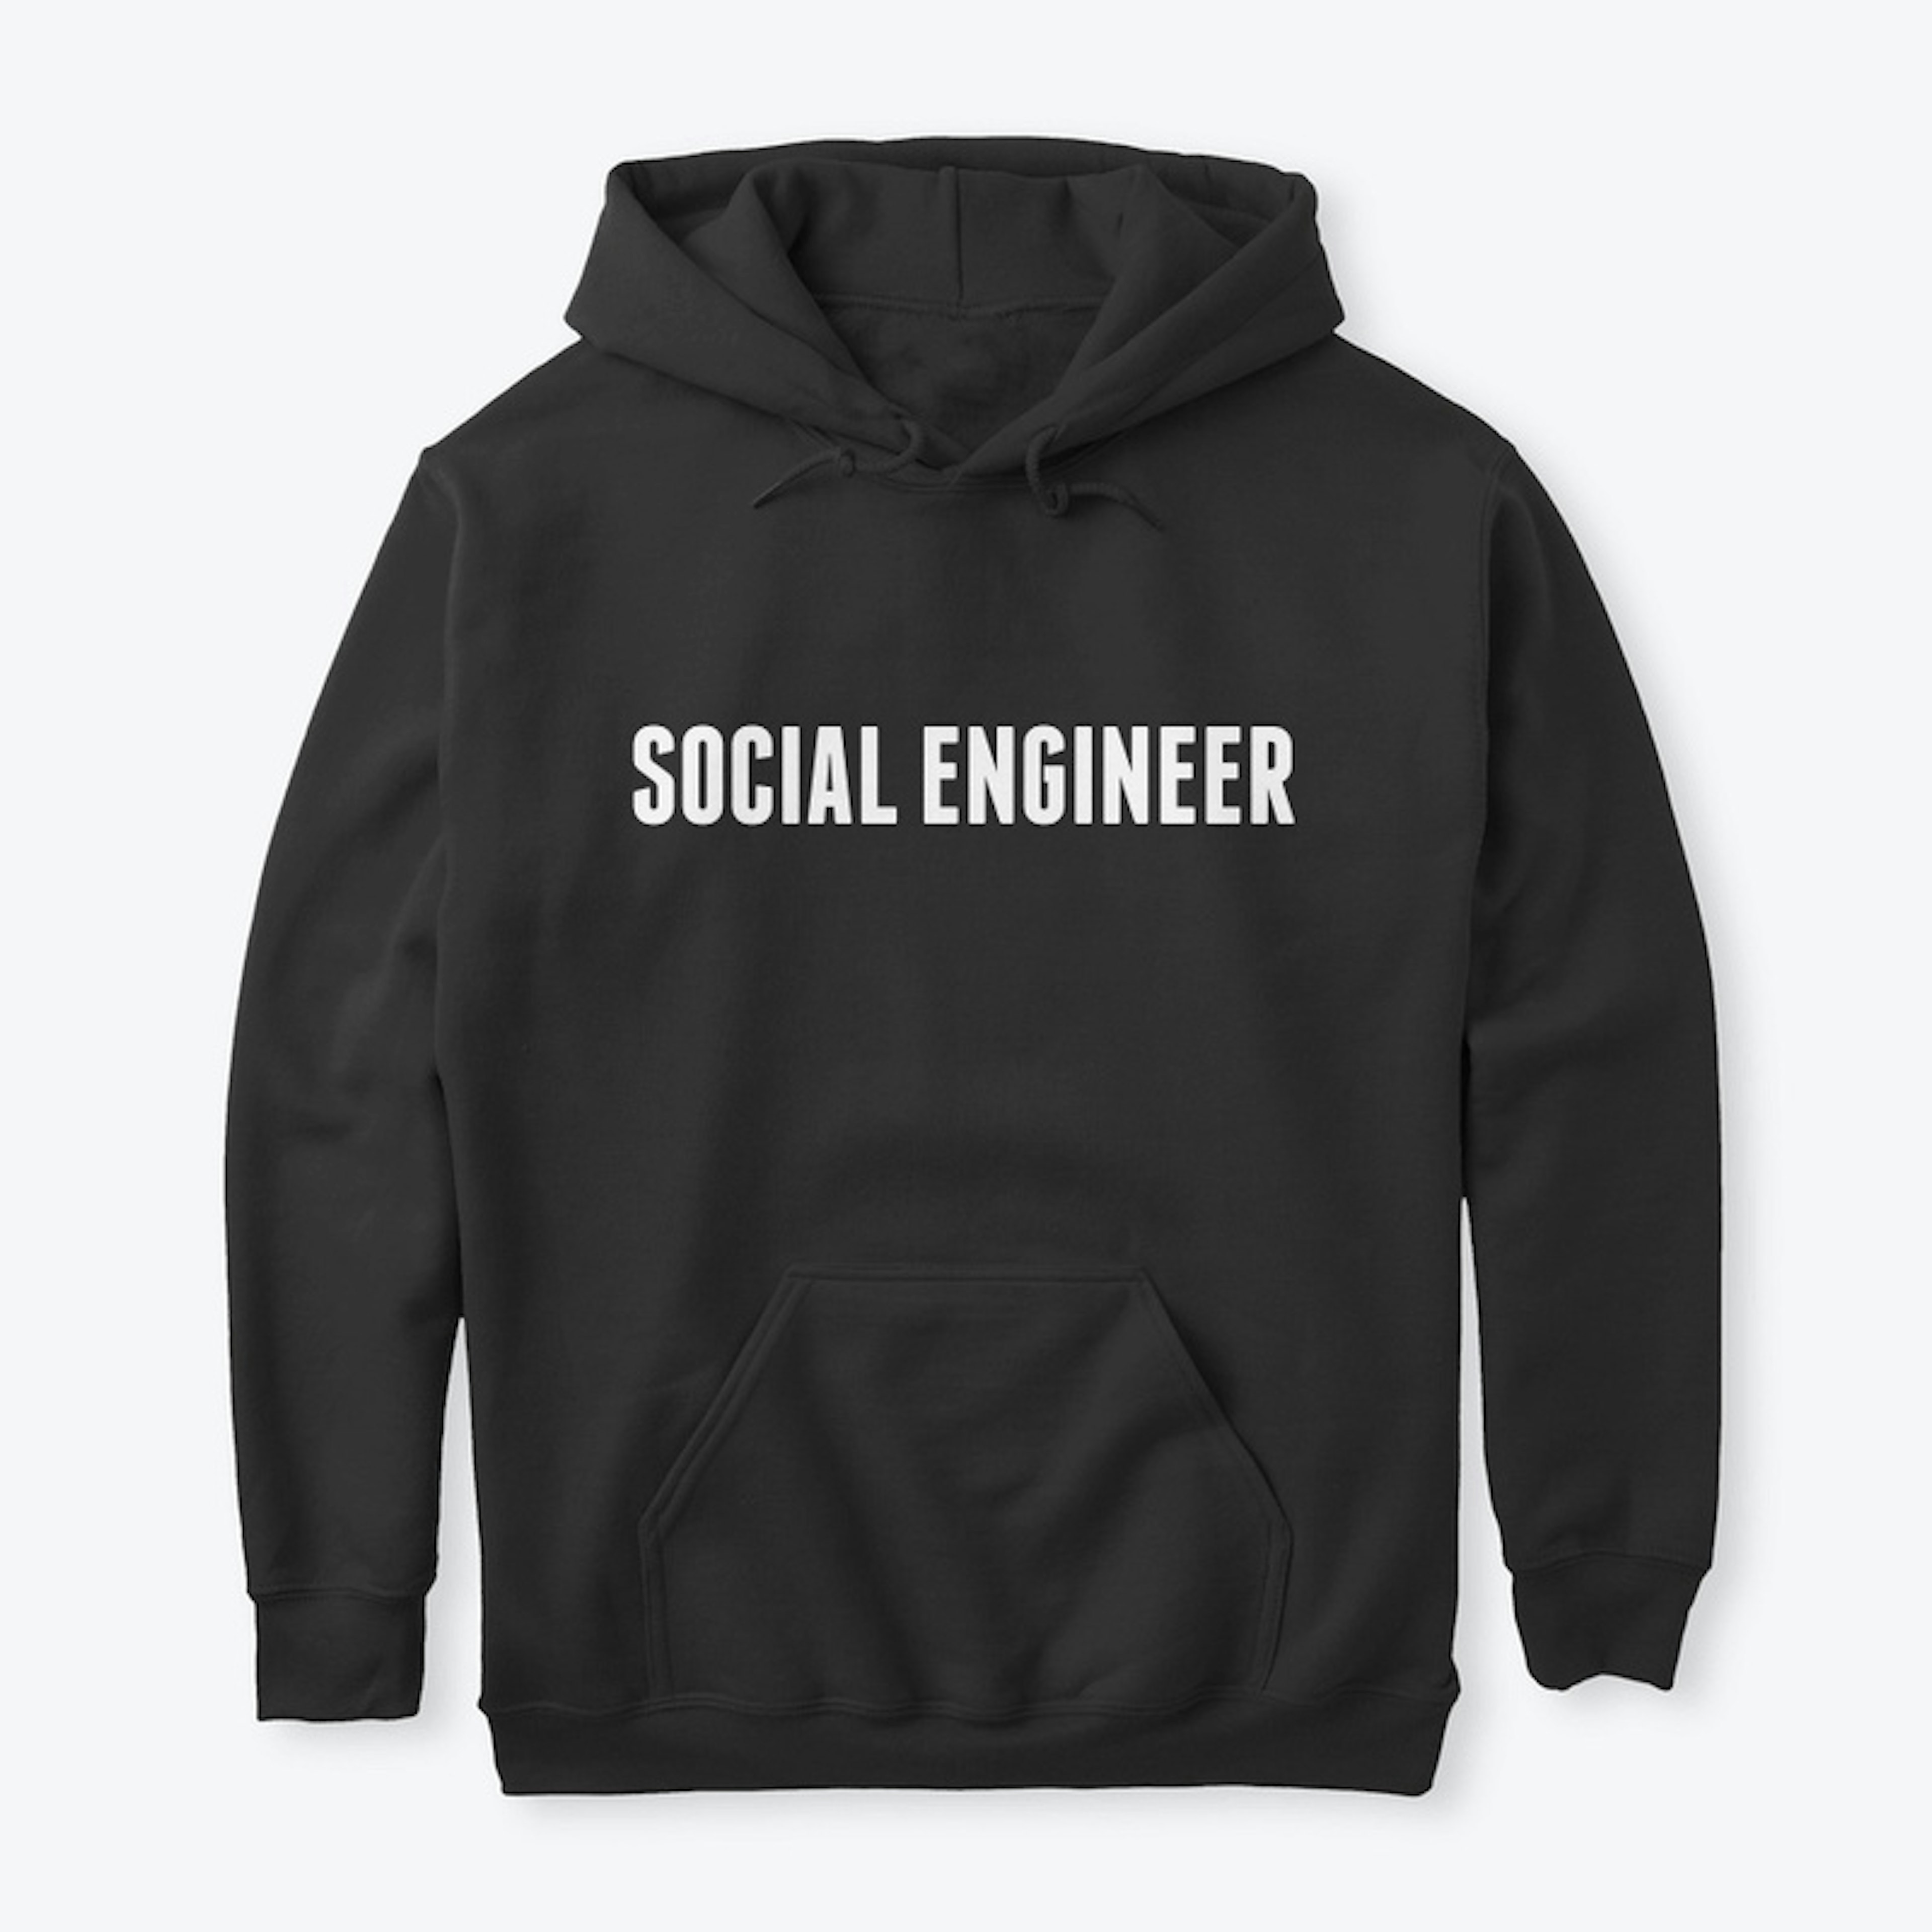 Classic Black Hoodie - Social Engineer